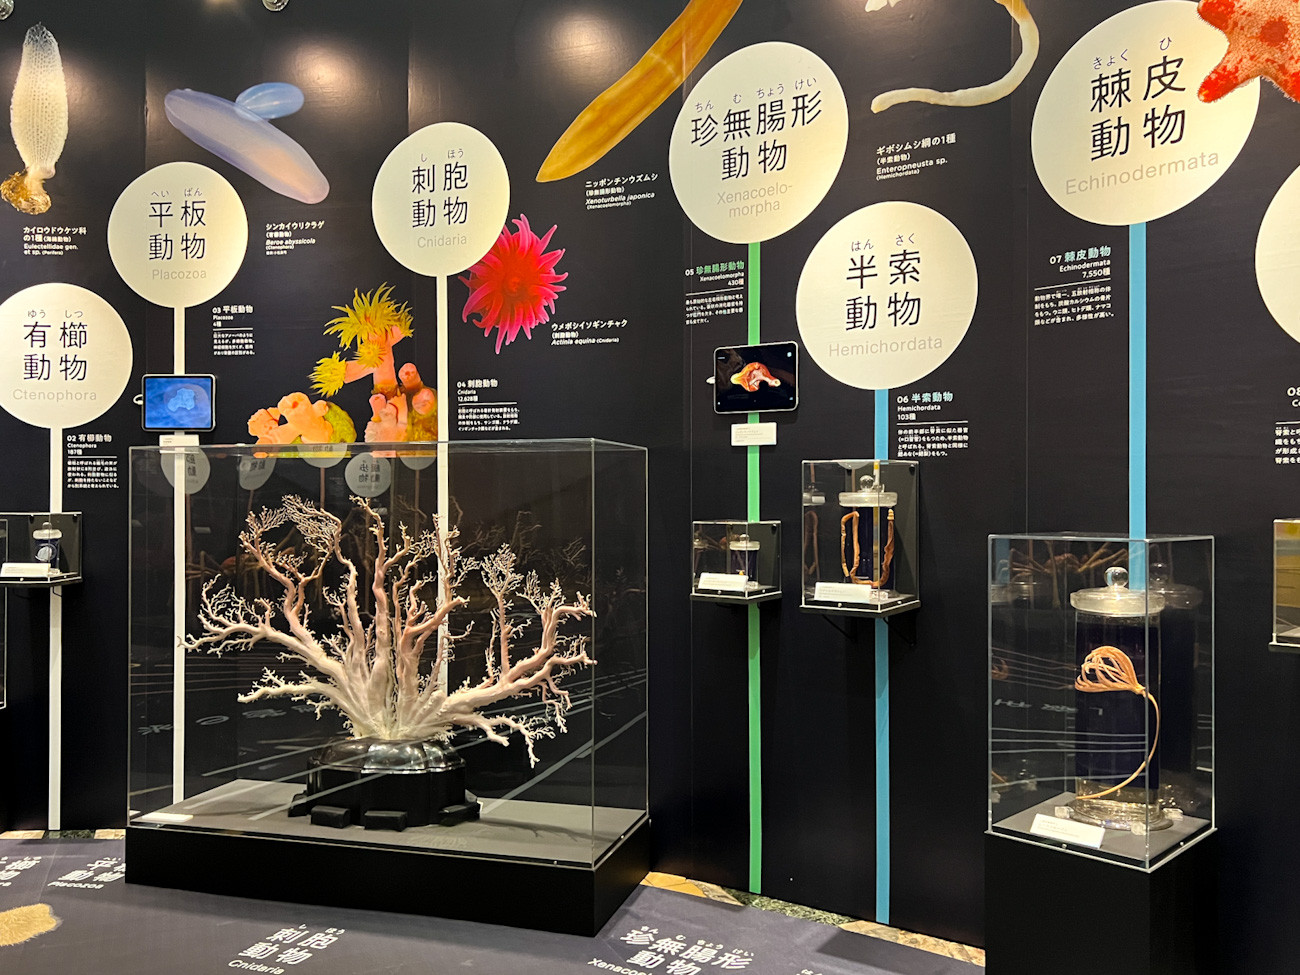  国立科学博物館 日本館1階 企画展「知られざる海生無脊椎動物の世界」会場